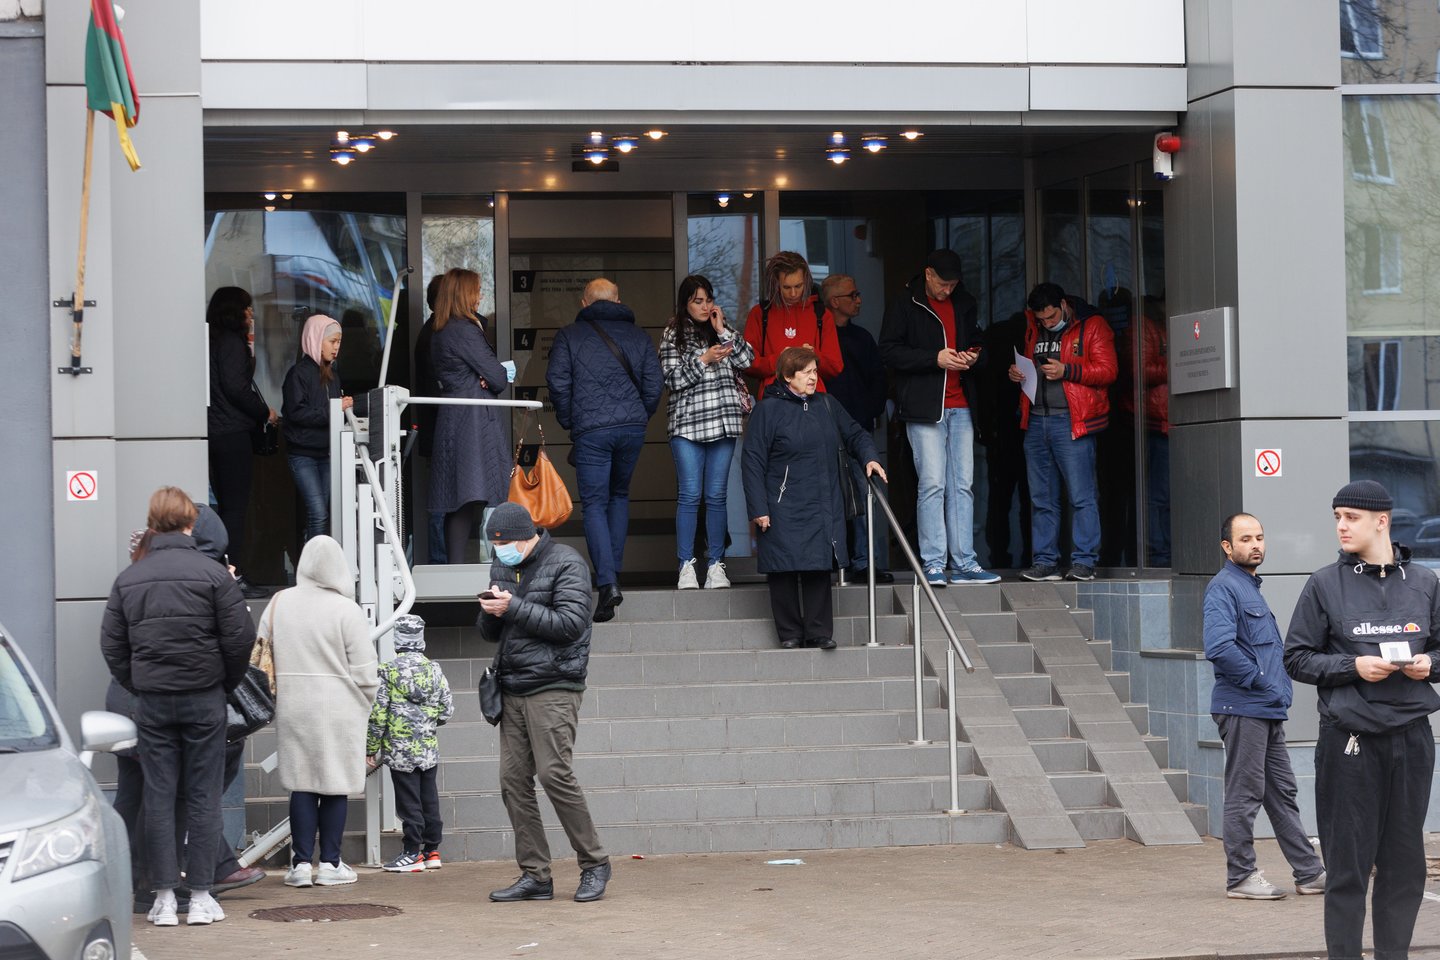 Trečiadienio rytą prie Migracijos departamento Vilniuje nutįso beveik 200 norinčiųjų pasigaminti asmens dokumentus žmonių gyvoji eilė.<br>T.Bauro nuotr.